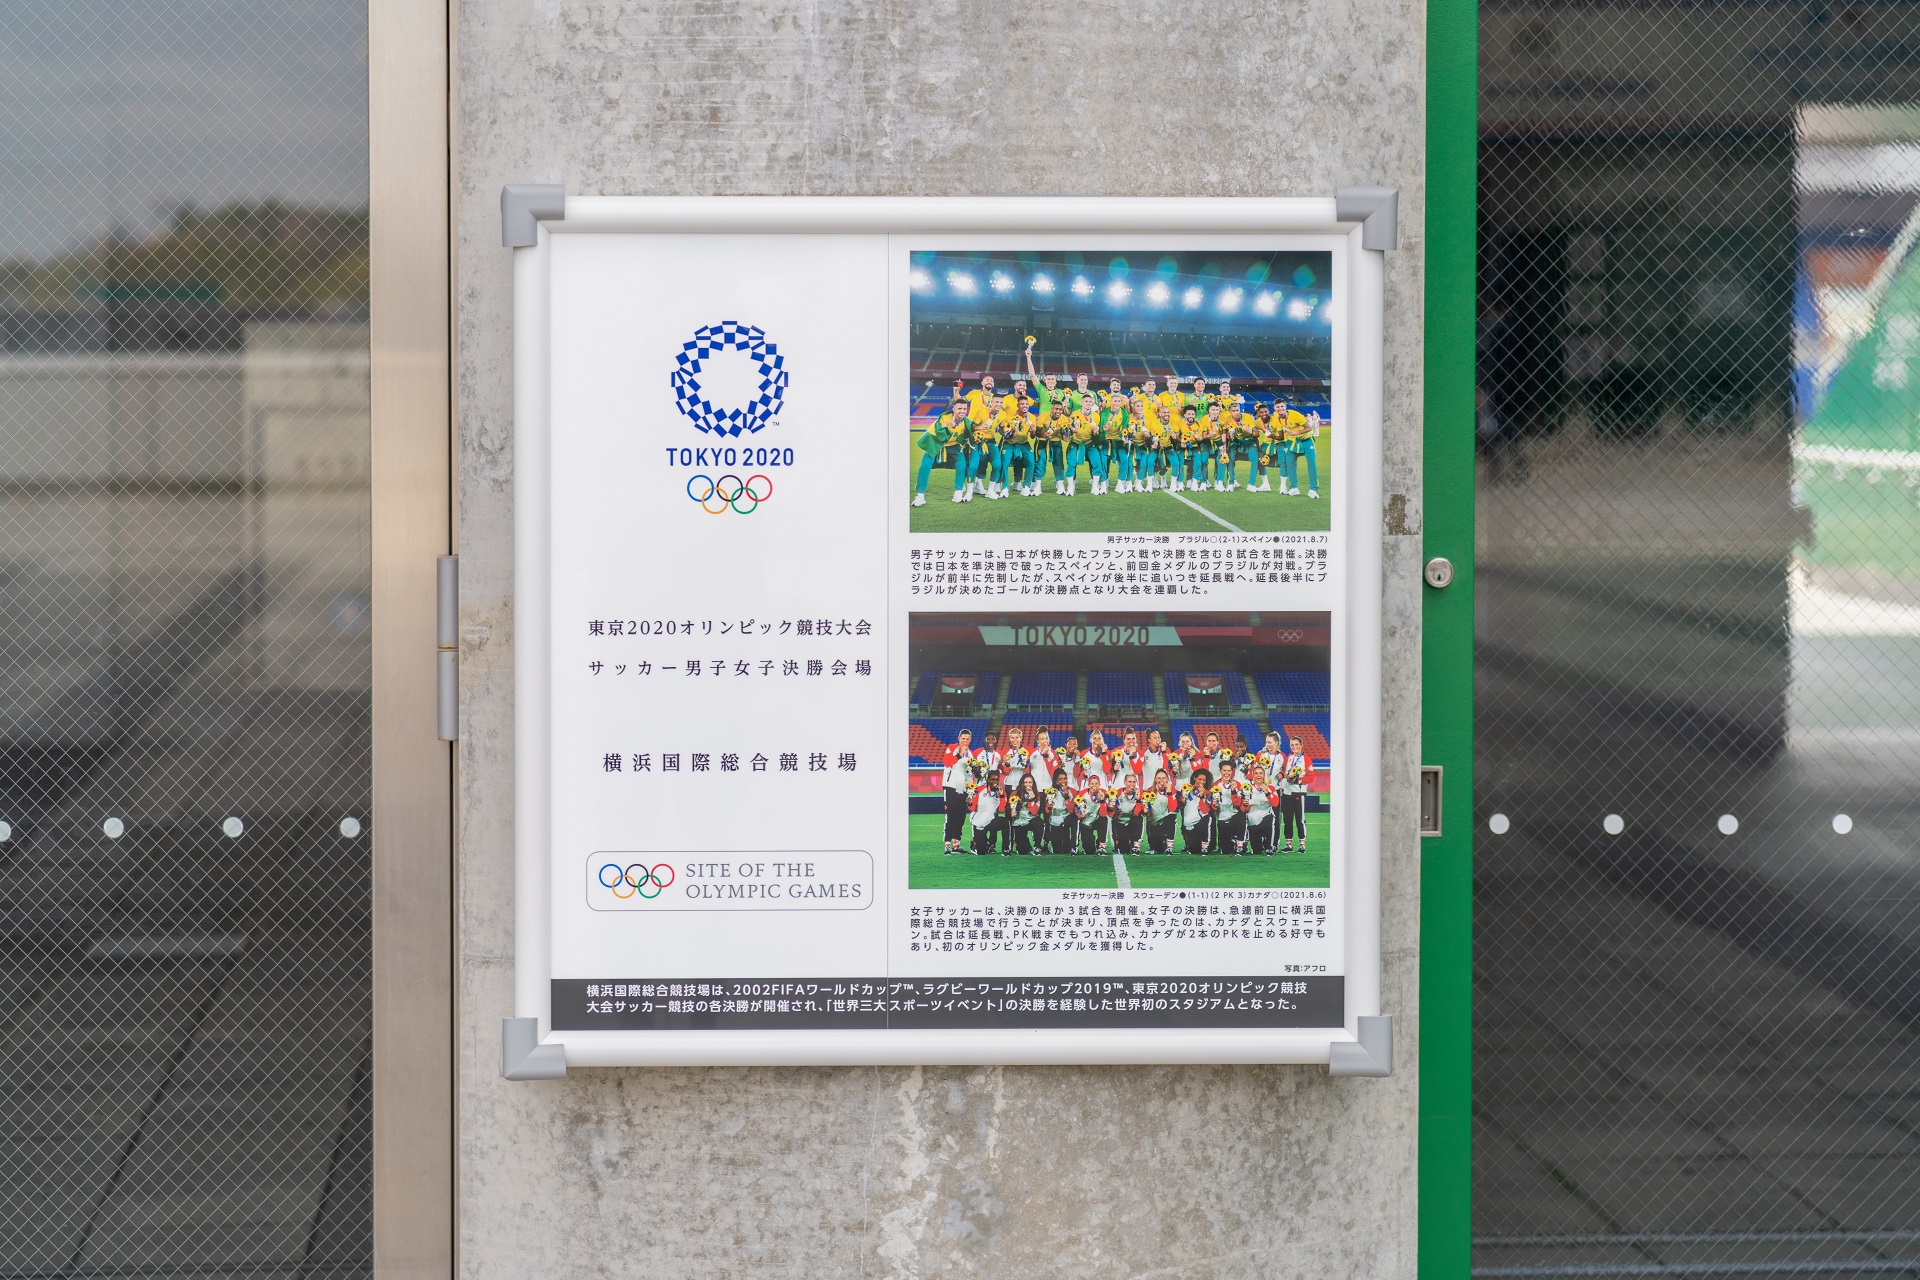 新横浜公園 日産スタジアムからのお知らせ 東ゲートにラグビーワールドカップ19 東京オリンピック競技大会サッカー決勝会場を記念した銘板を設置しました 日産スタジアム 横浜国際総合競技場 は 02fifaワールドカップを含めた世界三大